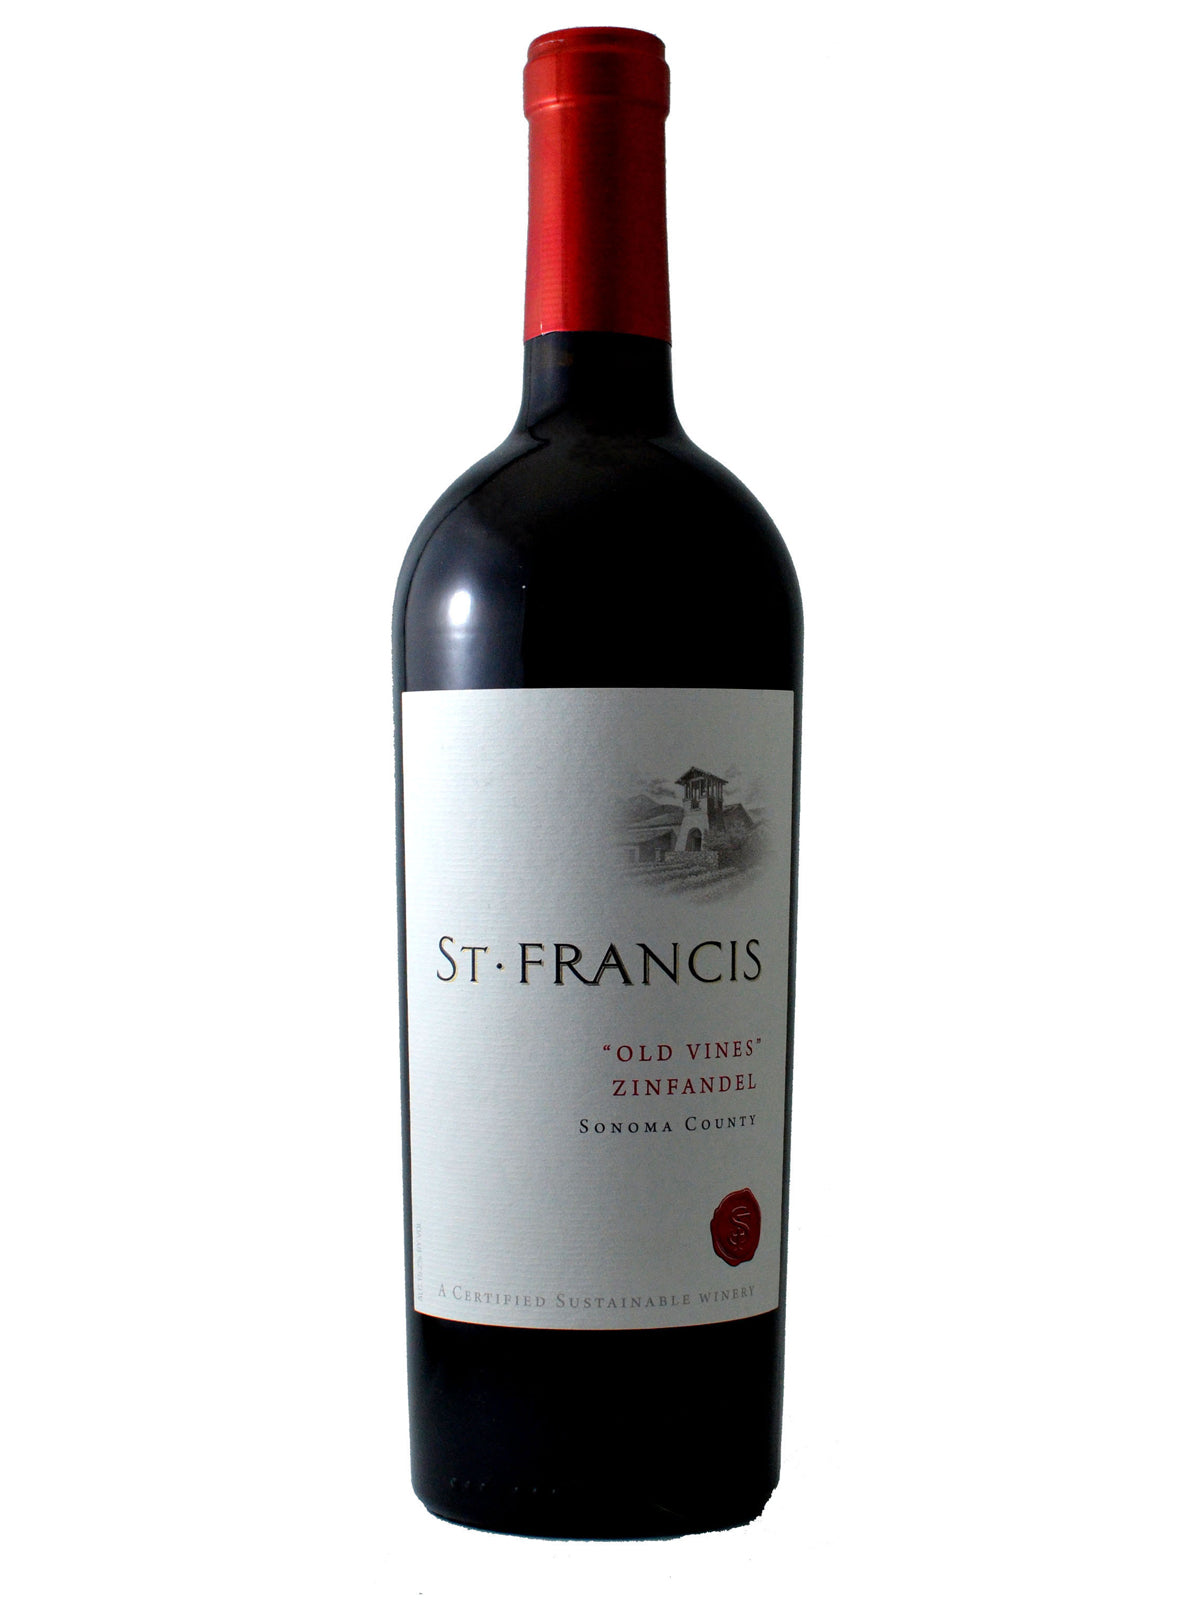 St. Francis "Old Vines" Zinfandel